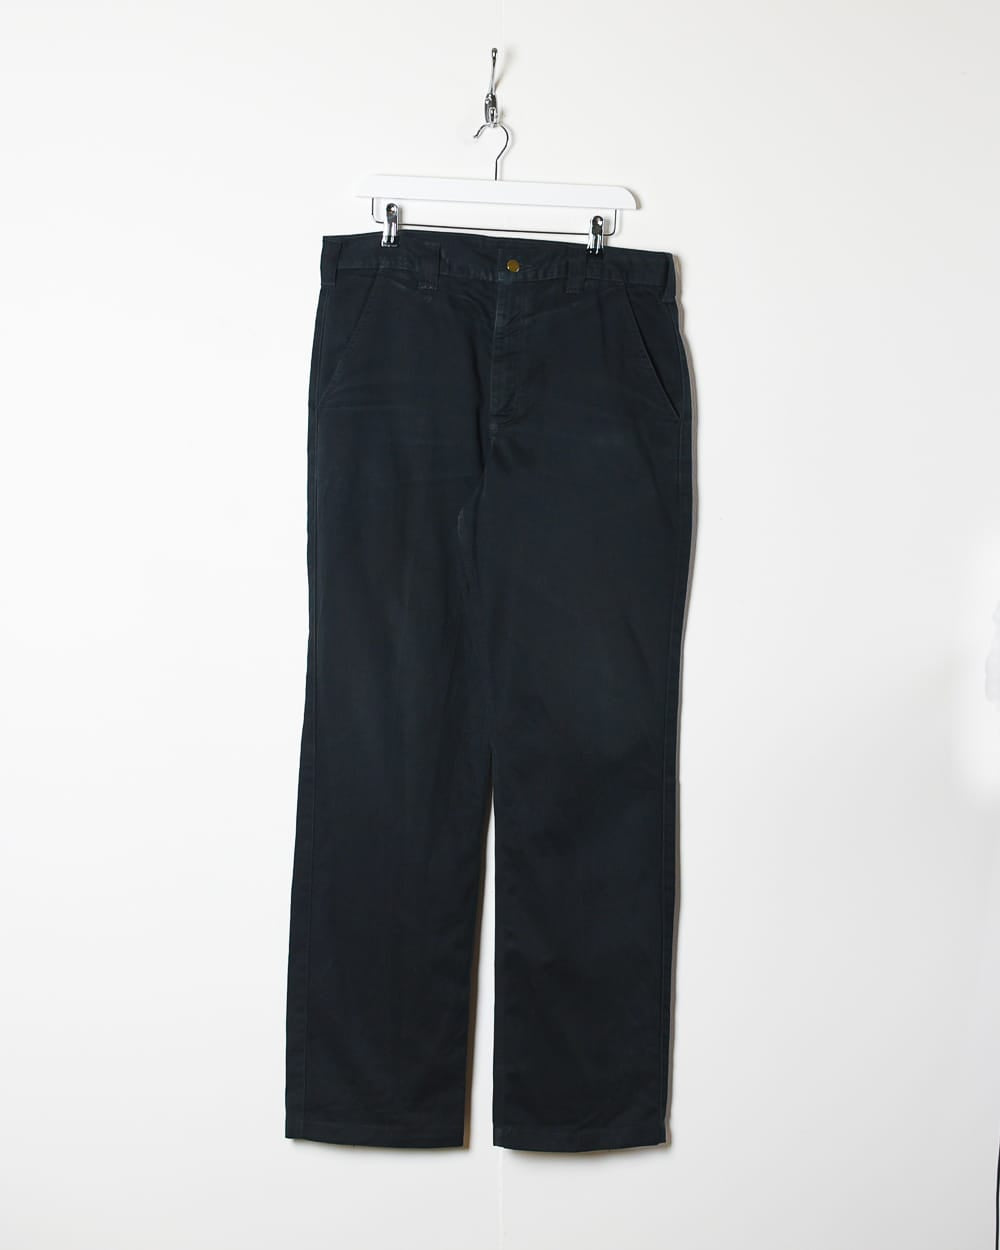 Black Carhartt Trousers - W34 L34